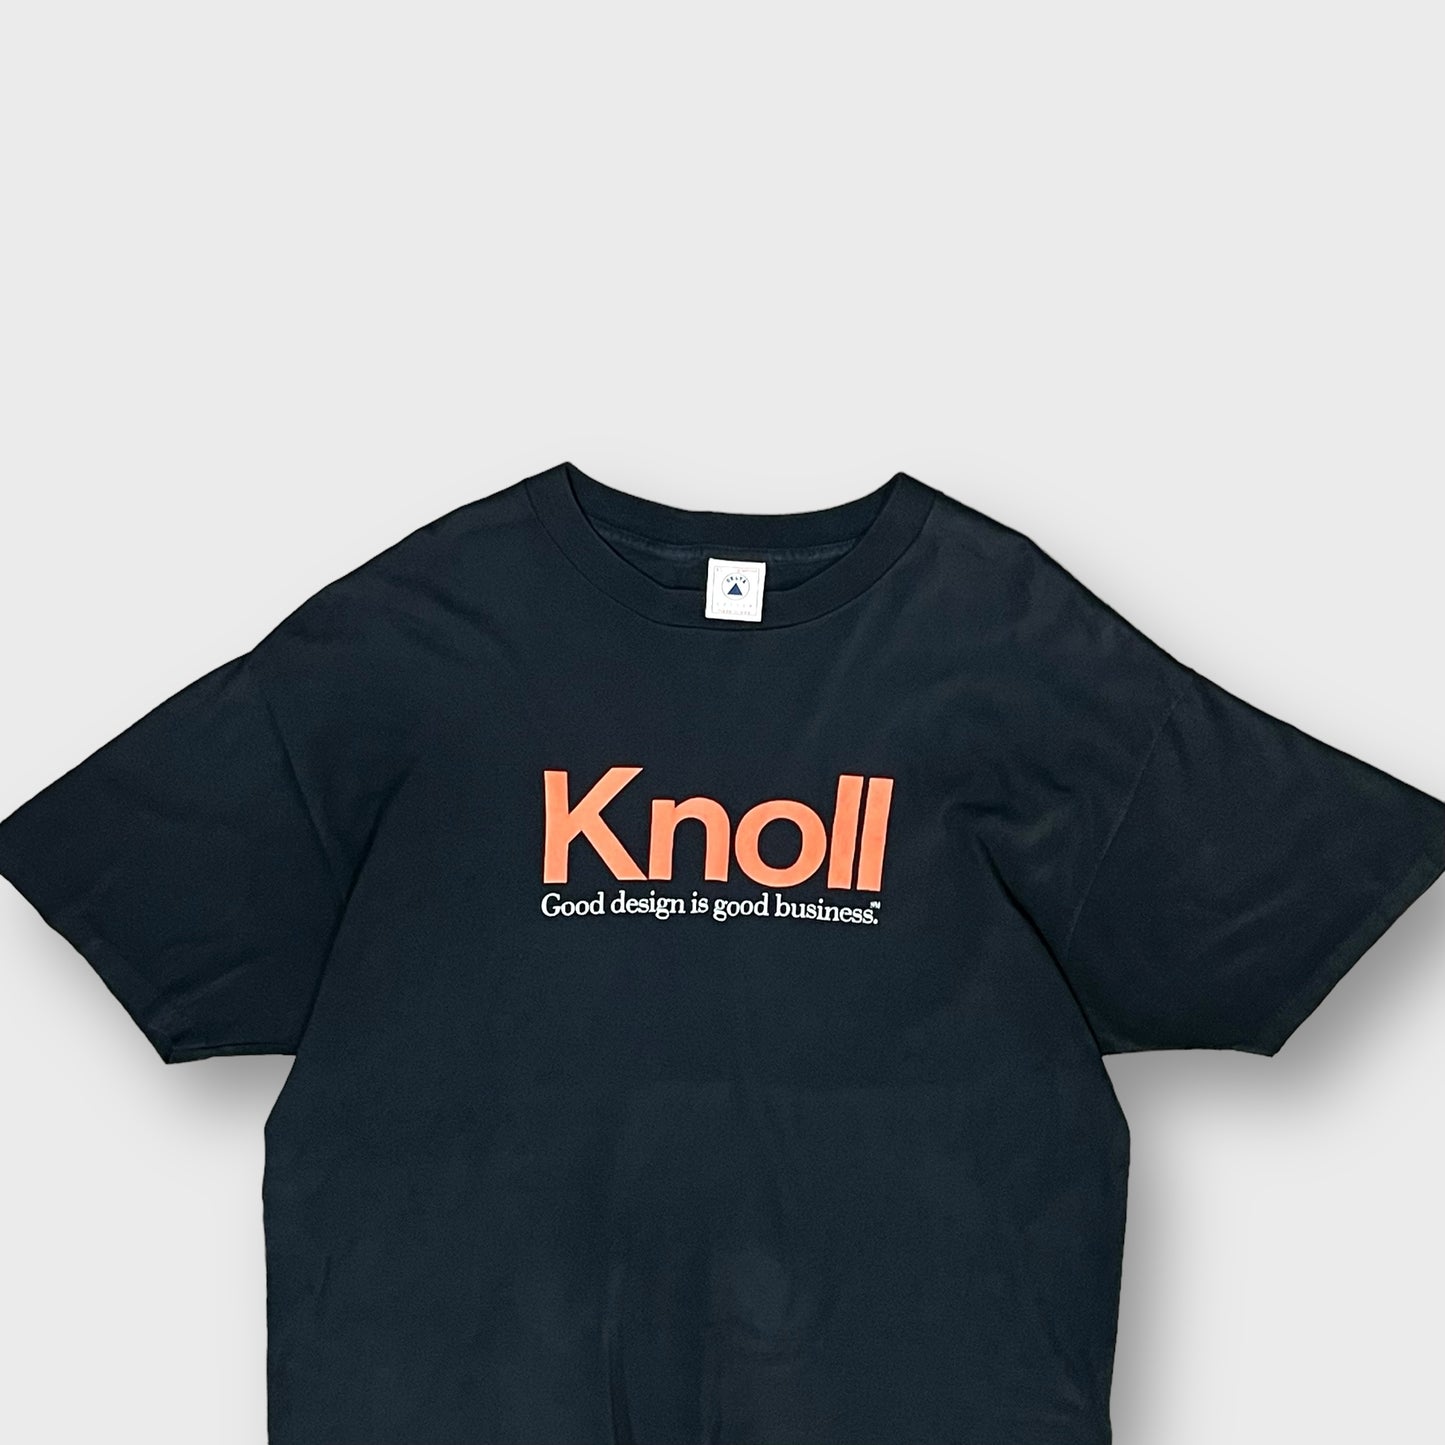 90’s “Knoll” t-shirt